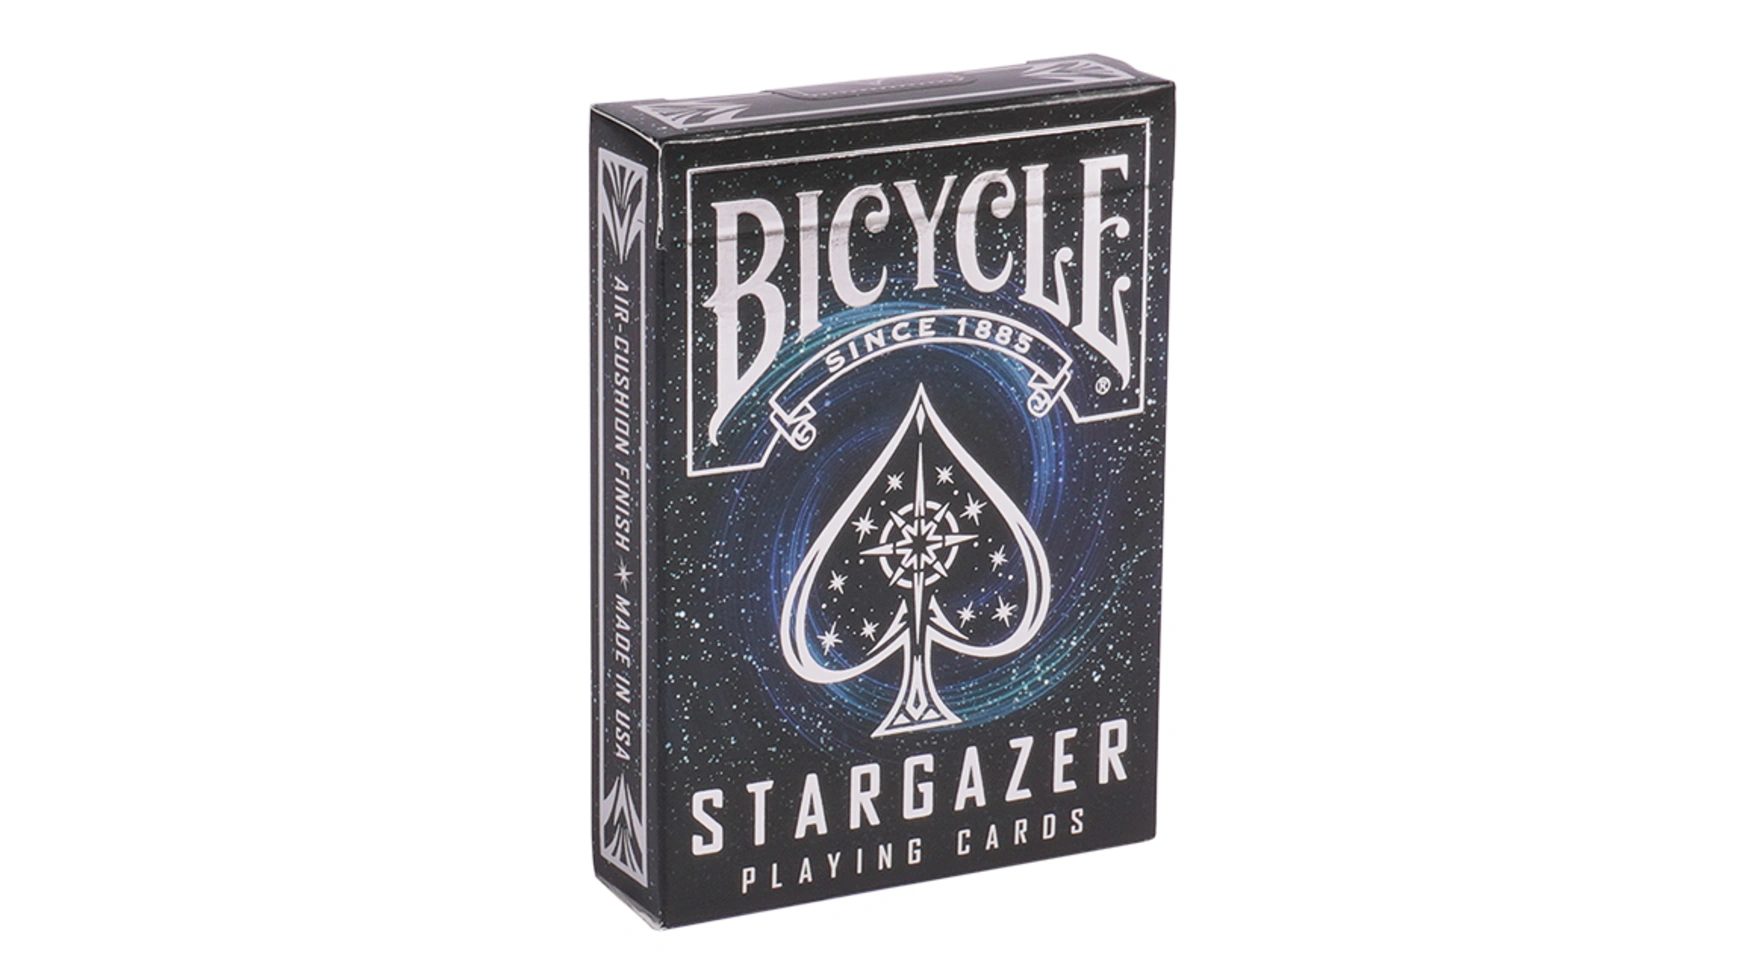 Bicycle колода карт для покера, карточная игра Stargazer игральные карты bicycle dark mode темный режим